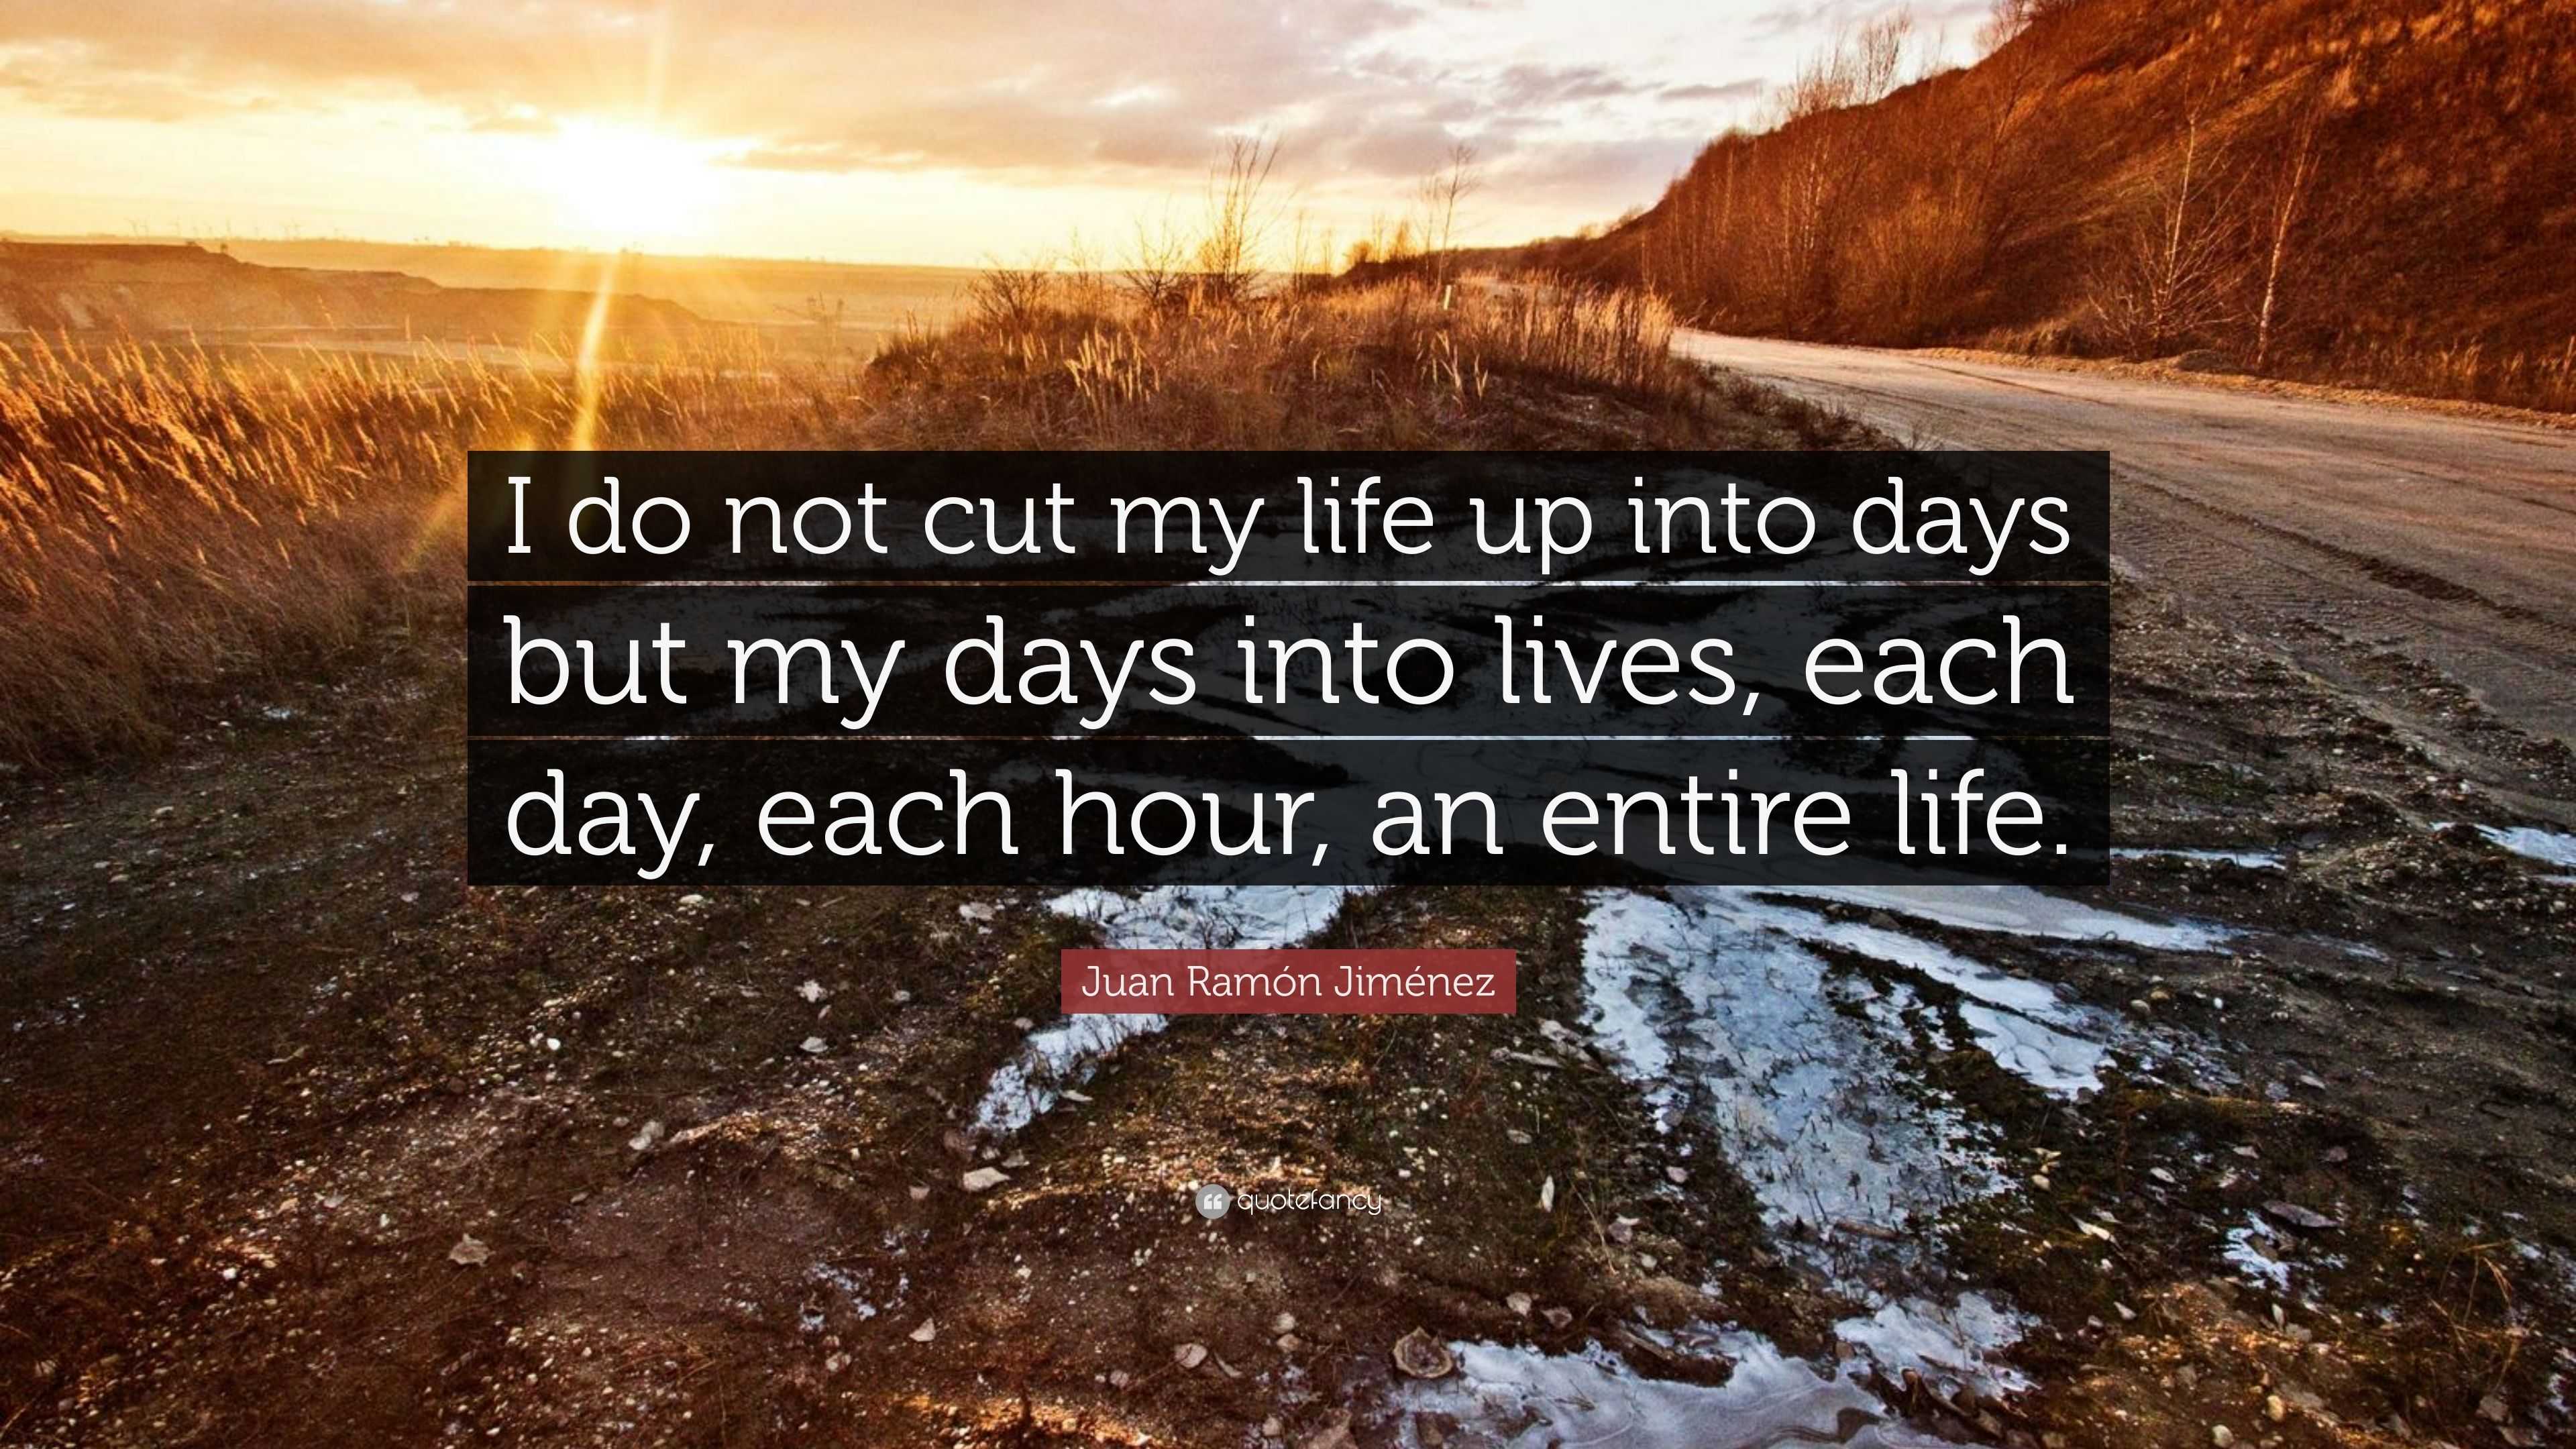 Juan Ramón Jiménez Quote: “I do not cut my life up into days but my ...